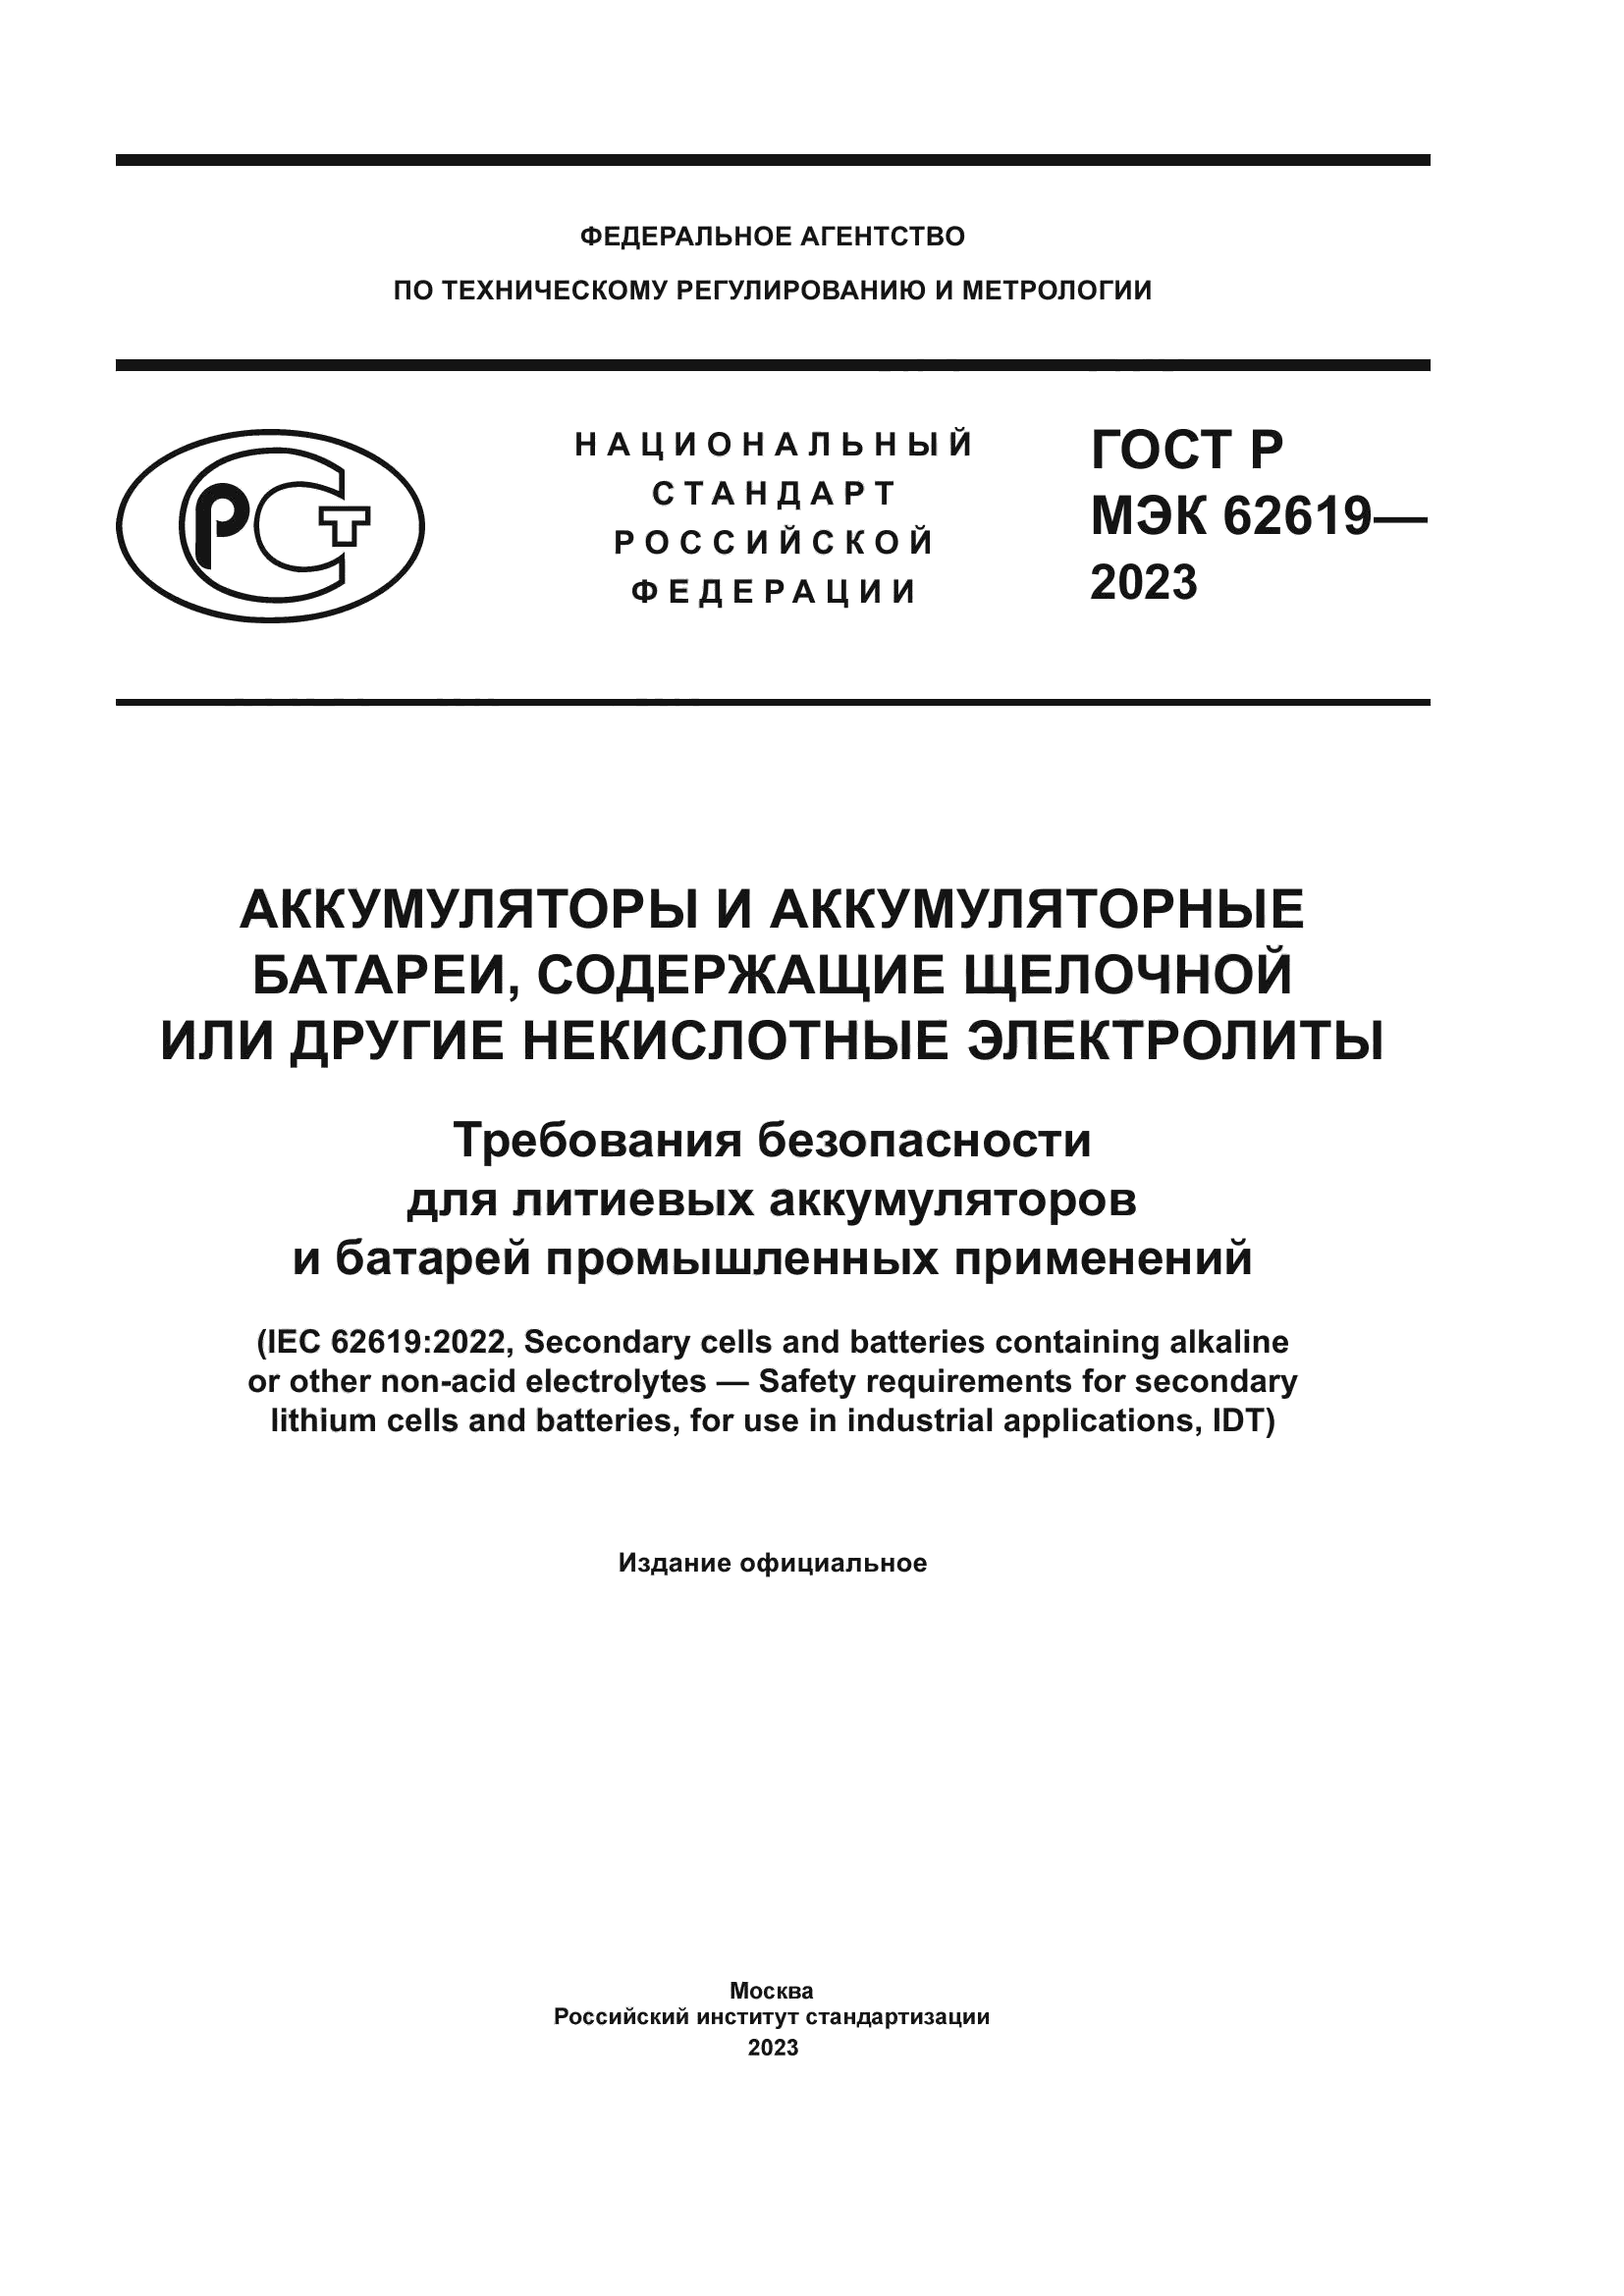 ГОСТ Р МЭК 62619-2023